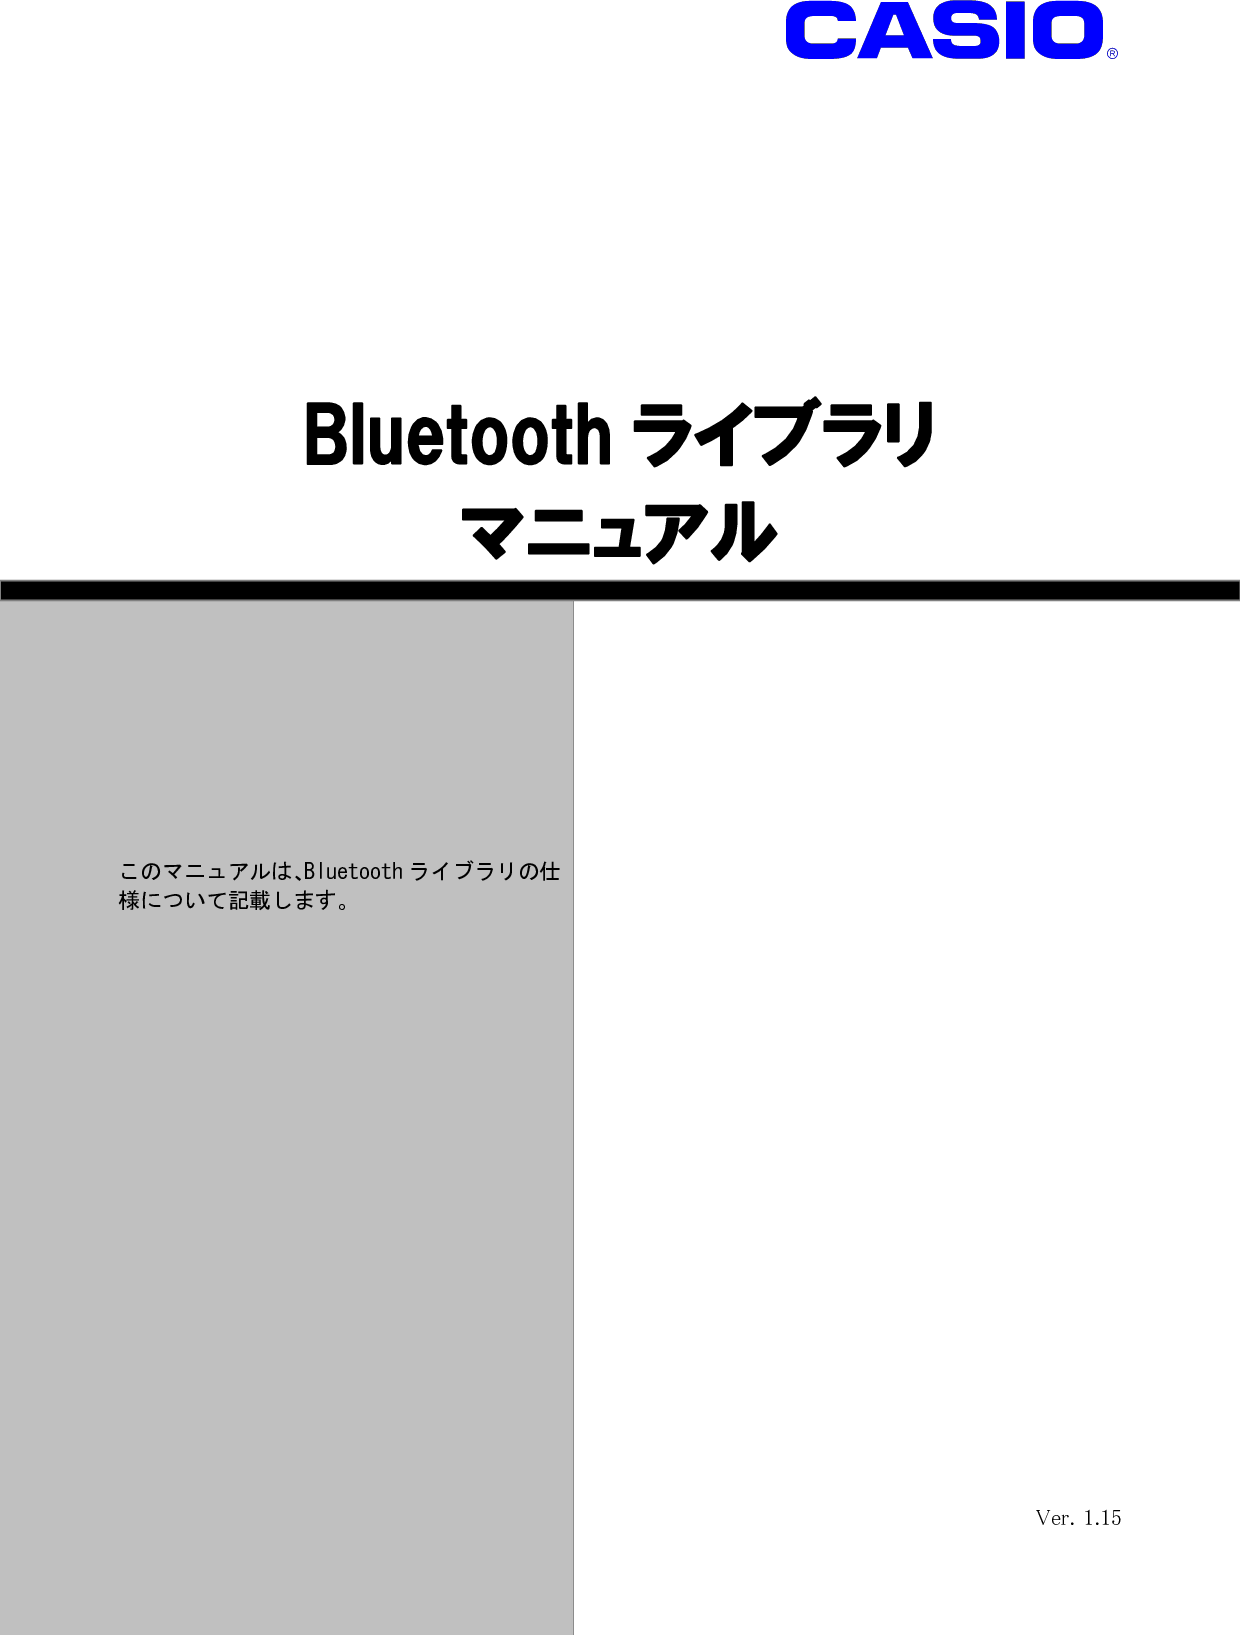 Casio Bluetoothライブラリマニュアル Ver1 15 Bluetoothlib